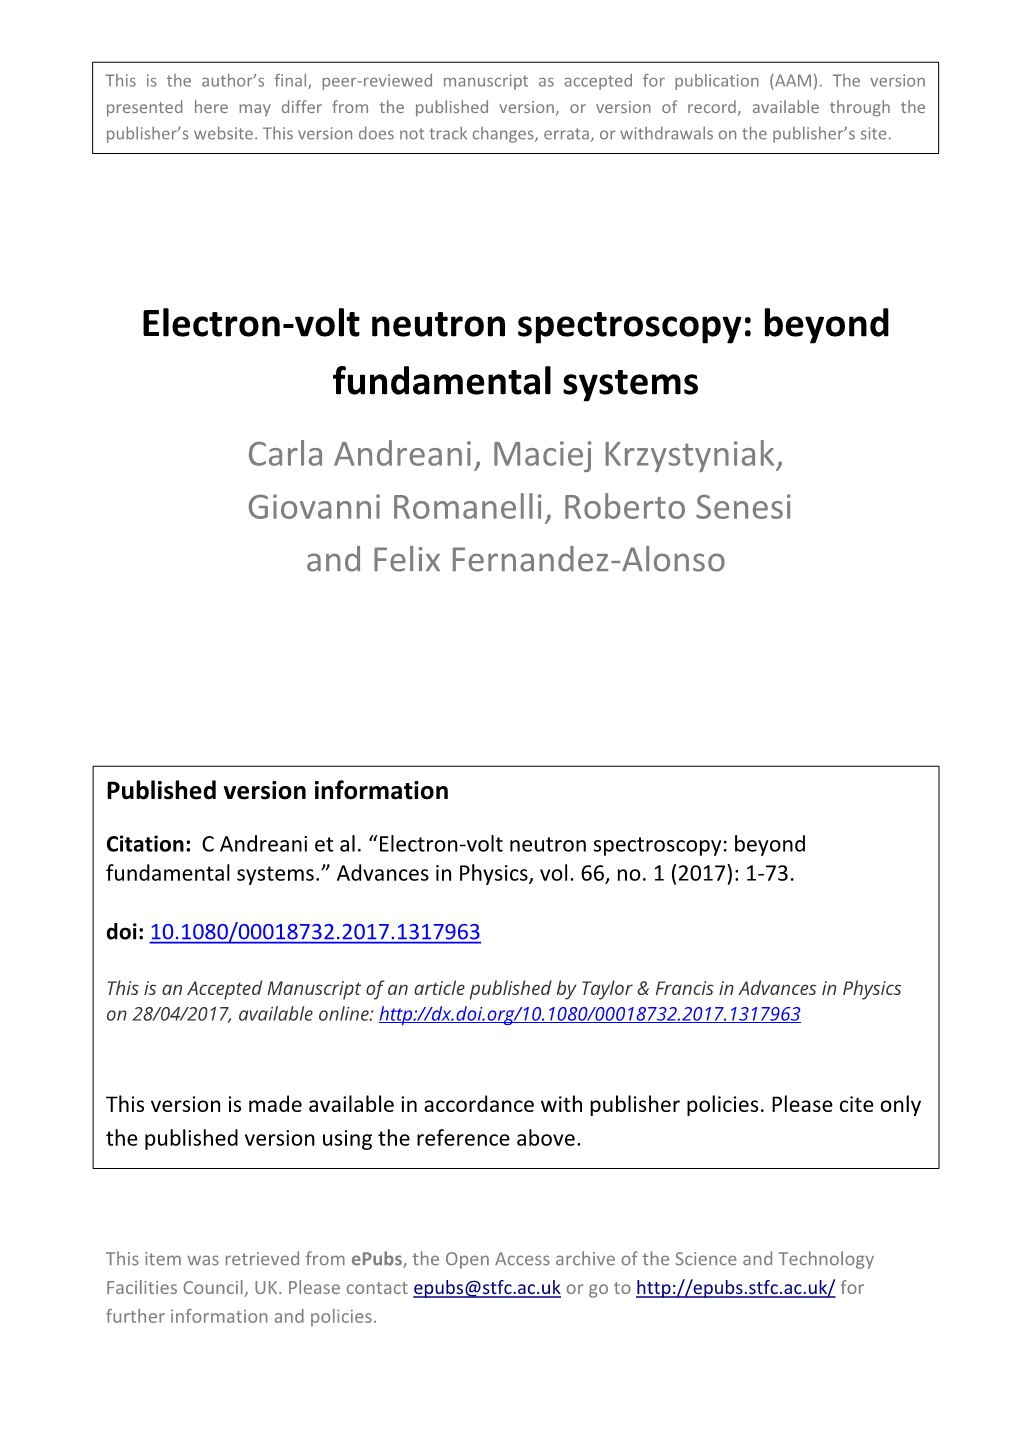 Electron-Volt Neutron Spectroscopy: Beyond